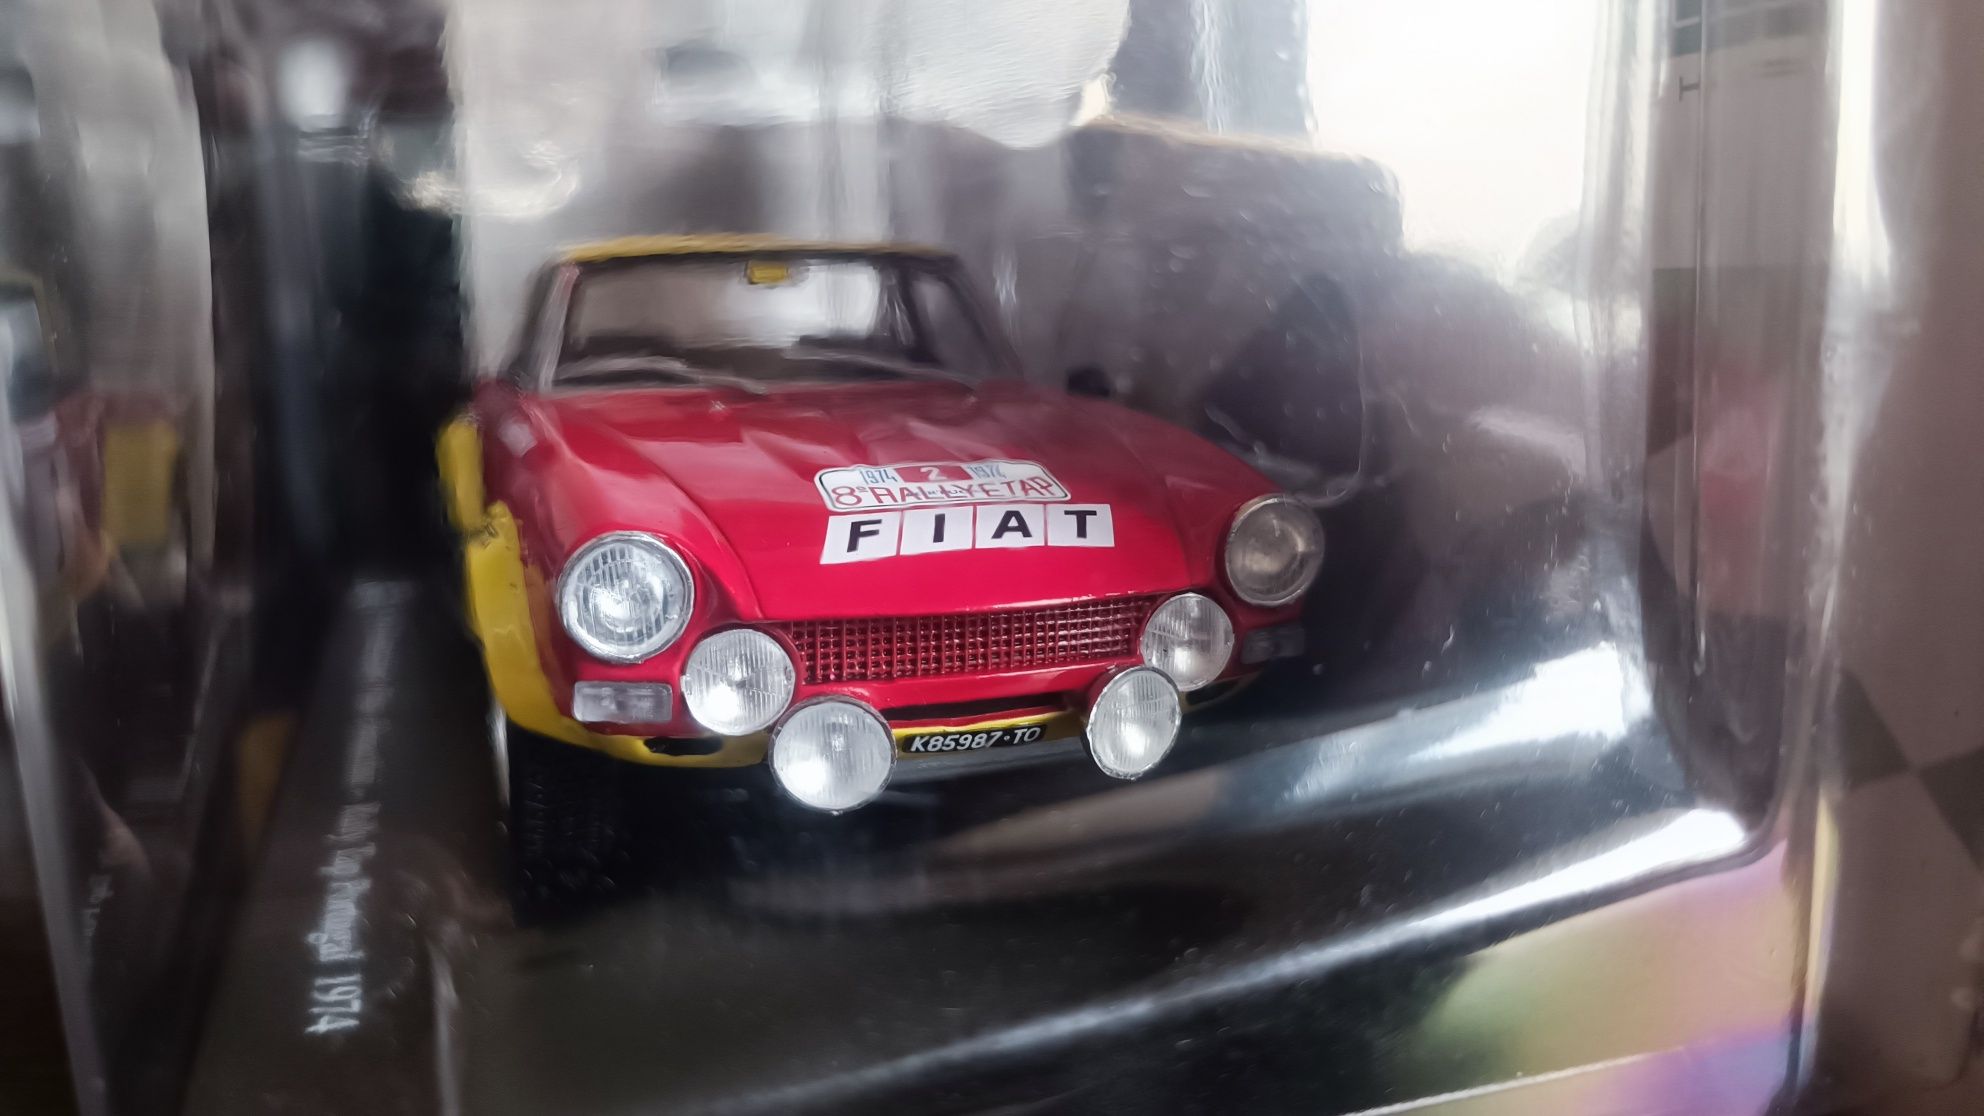 Fiat Abarth 124 Spider. Hachette 1:24